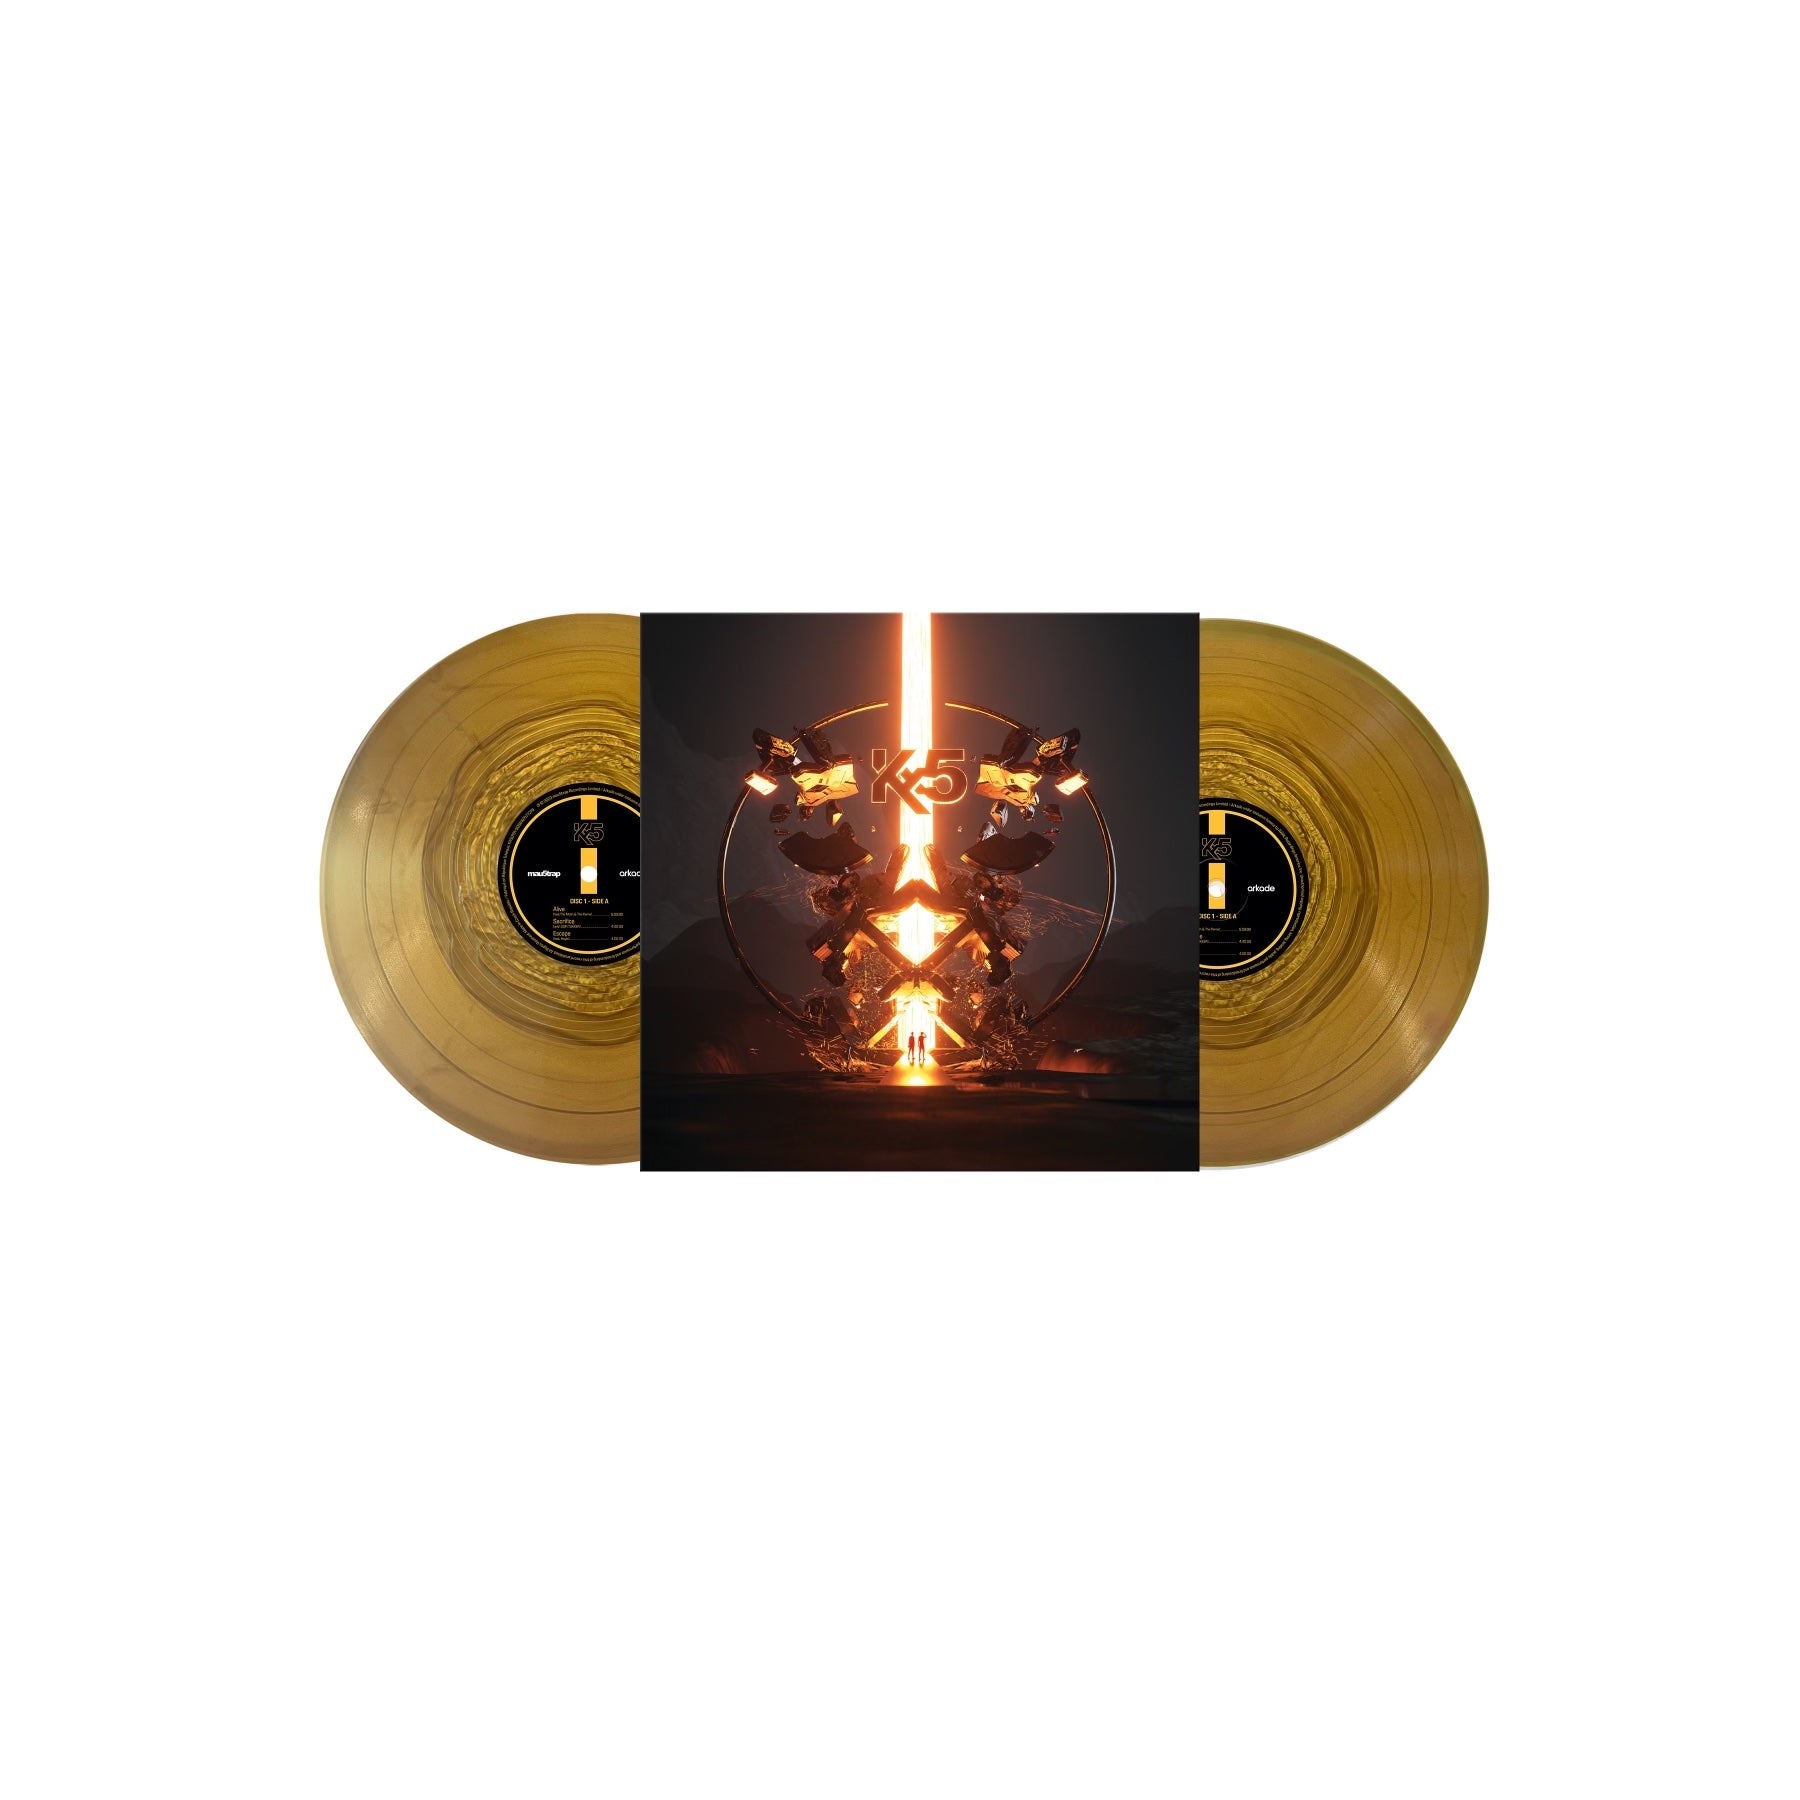 'Kx5' Double LP Gold Vinyl